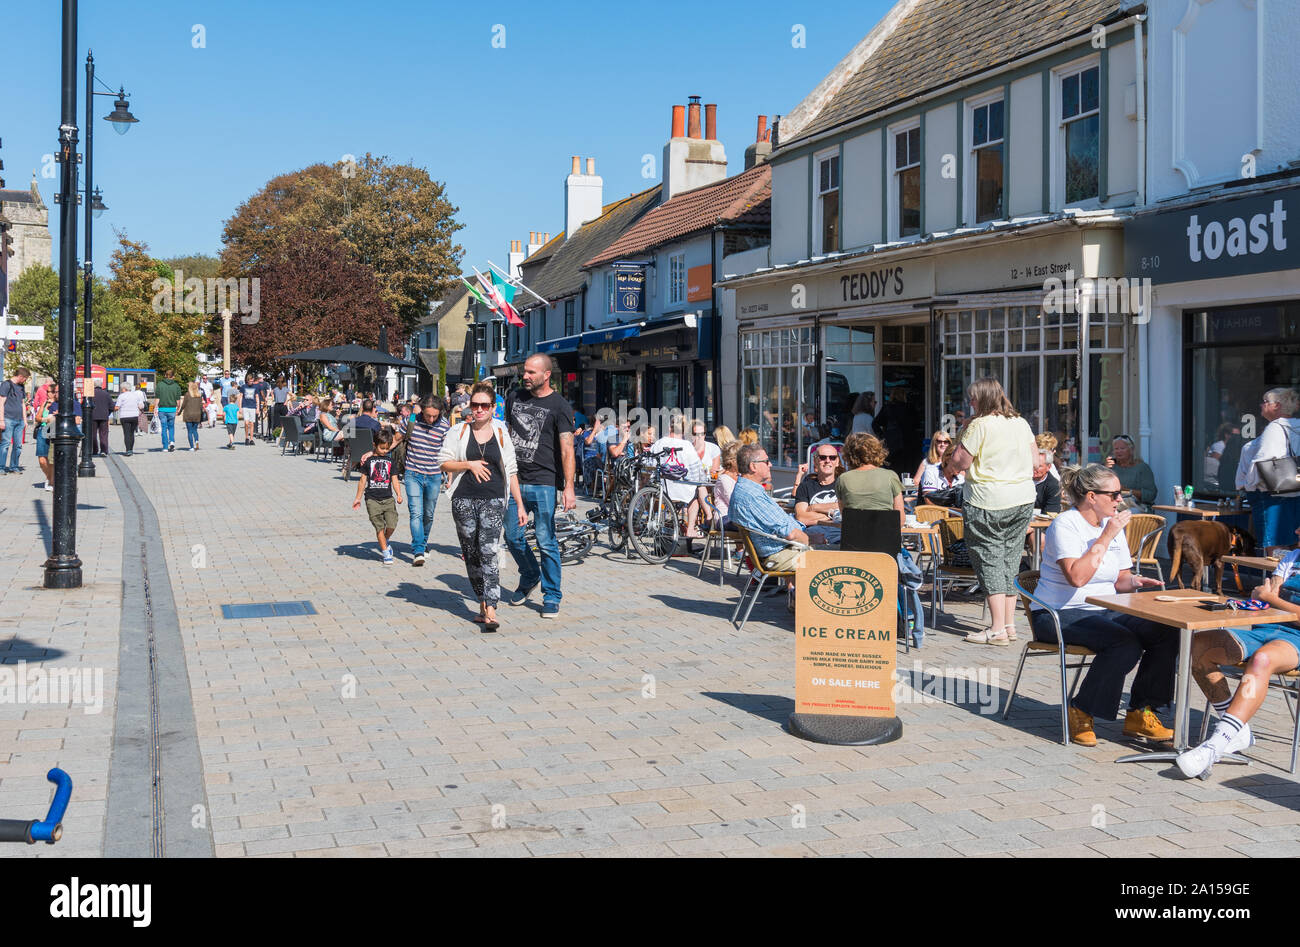 Menschen zu Fuß entlang einer verkehrsberuhigten Straße von lokalen Geschäften und Cafes im East Street, Shoreham-by-Sea West Sussex, England, UK. Stockfoto